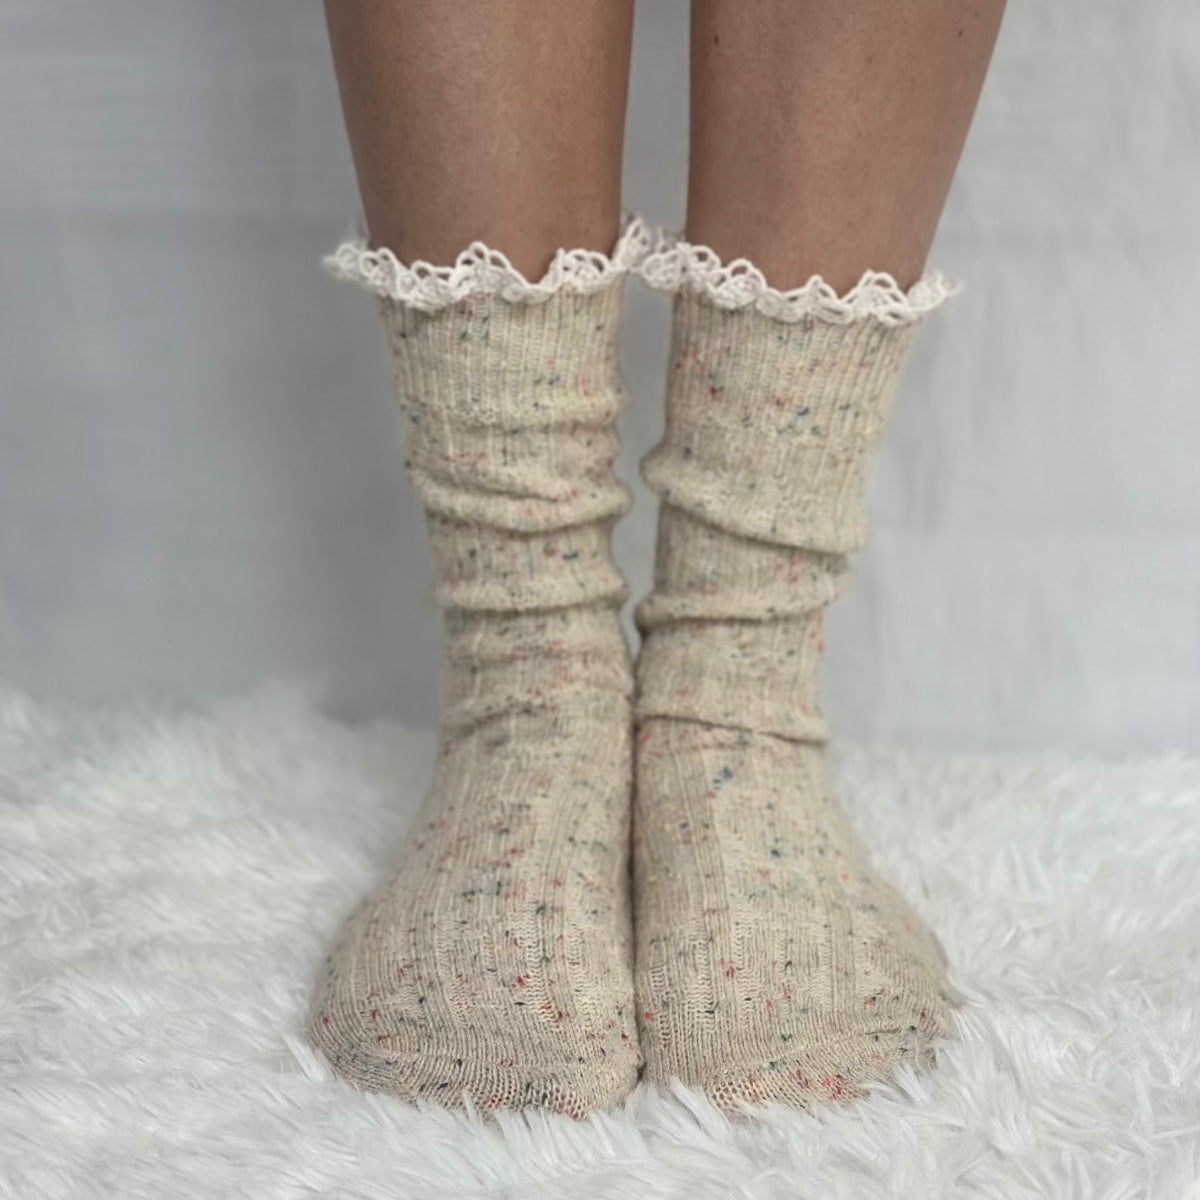 BOOTIE lace slouch socks - oatmeal, cute short ankle socks, boot socks women, quality hosiery ladies